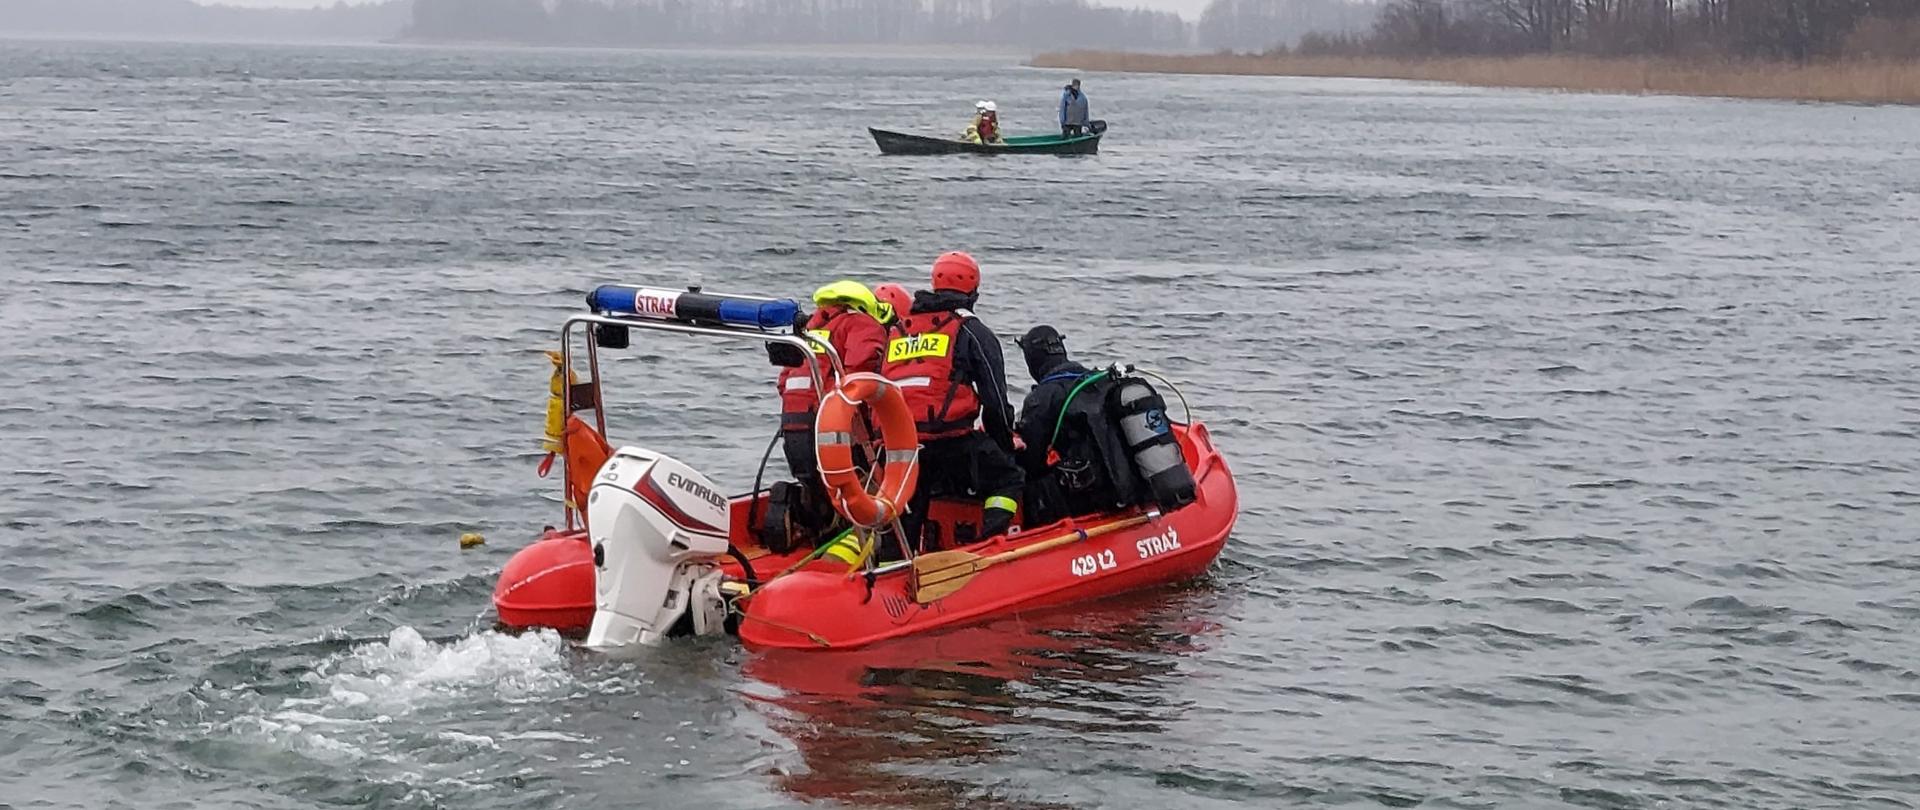 Pochmurno. Czerwona łódź ratownicza ze strażakami płynie po tafli jeziora. W tle inna łódź i drzewa